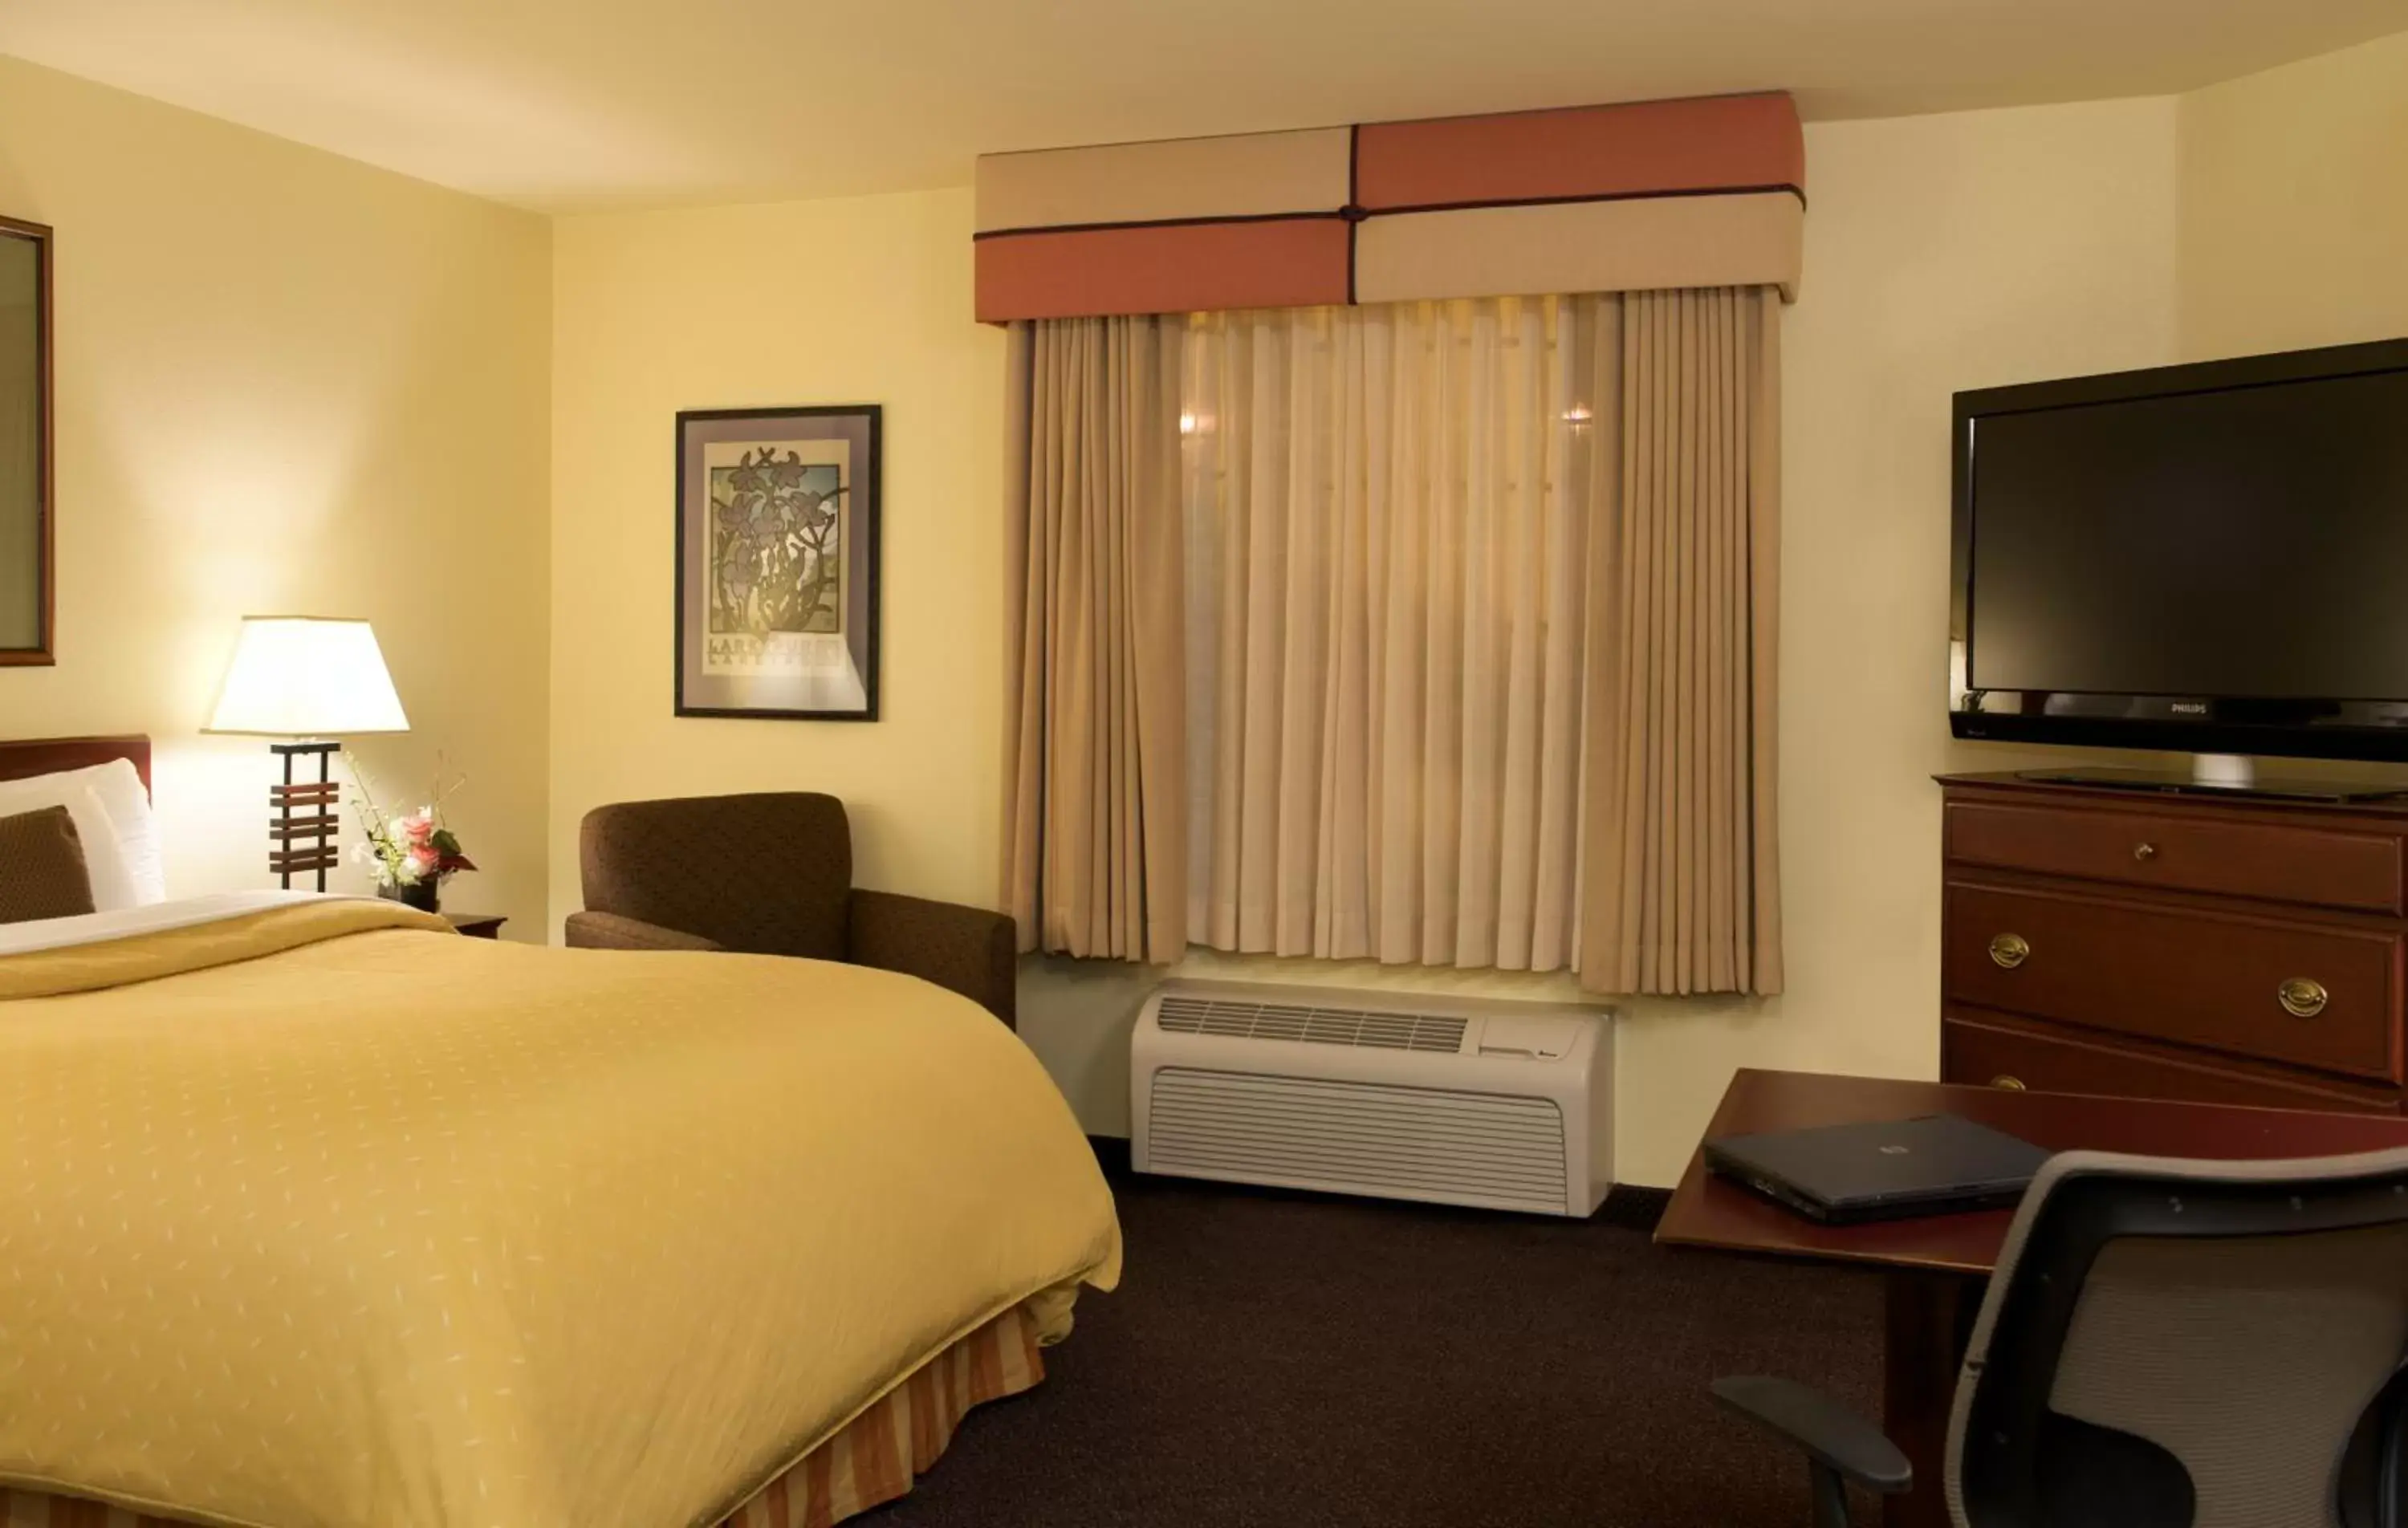 Bedroom, Room Photo in Larkspur Landing Bellevue - An All-Suite Hotel